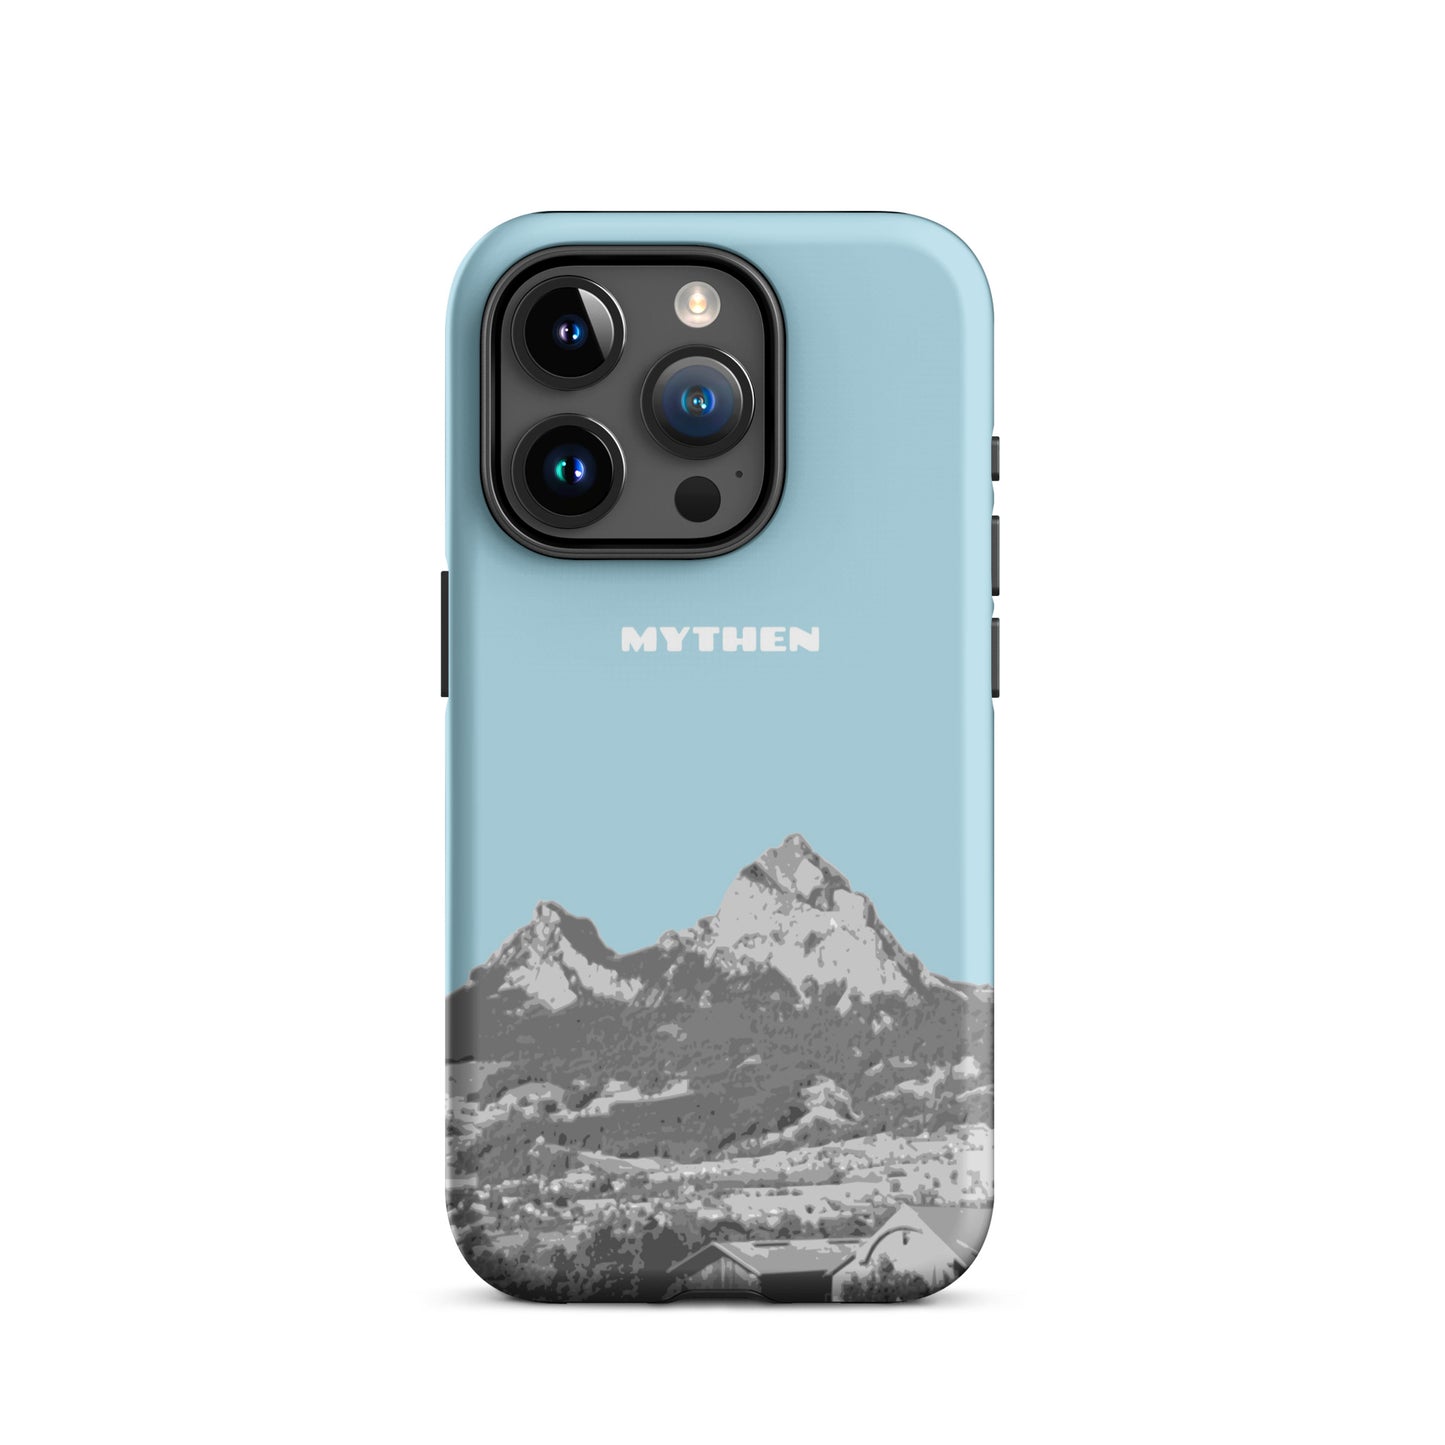 Hülle für das iPhone 15 Pro von Apple in der Farbe Hellblau, die den Grossen Mythen und den Kleinen Mythen bei Schwyz zeigt. 